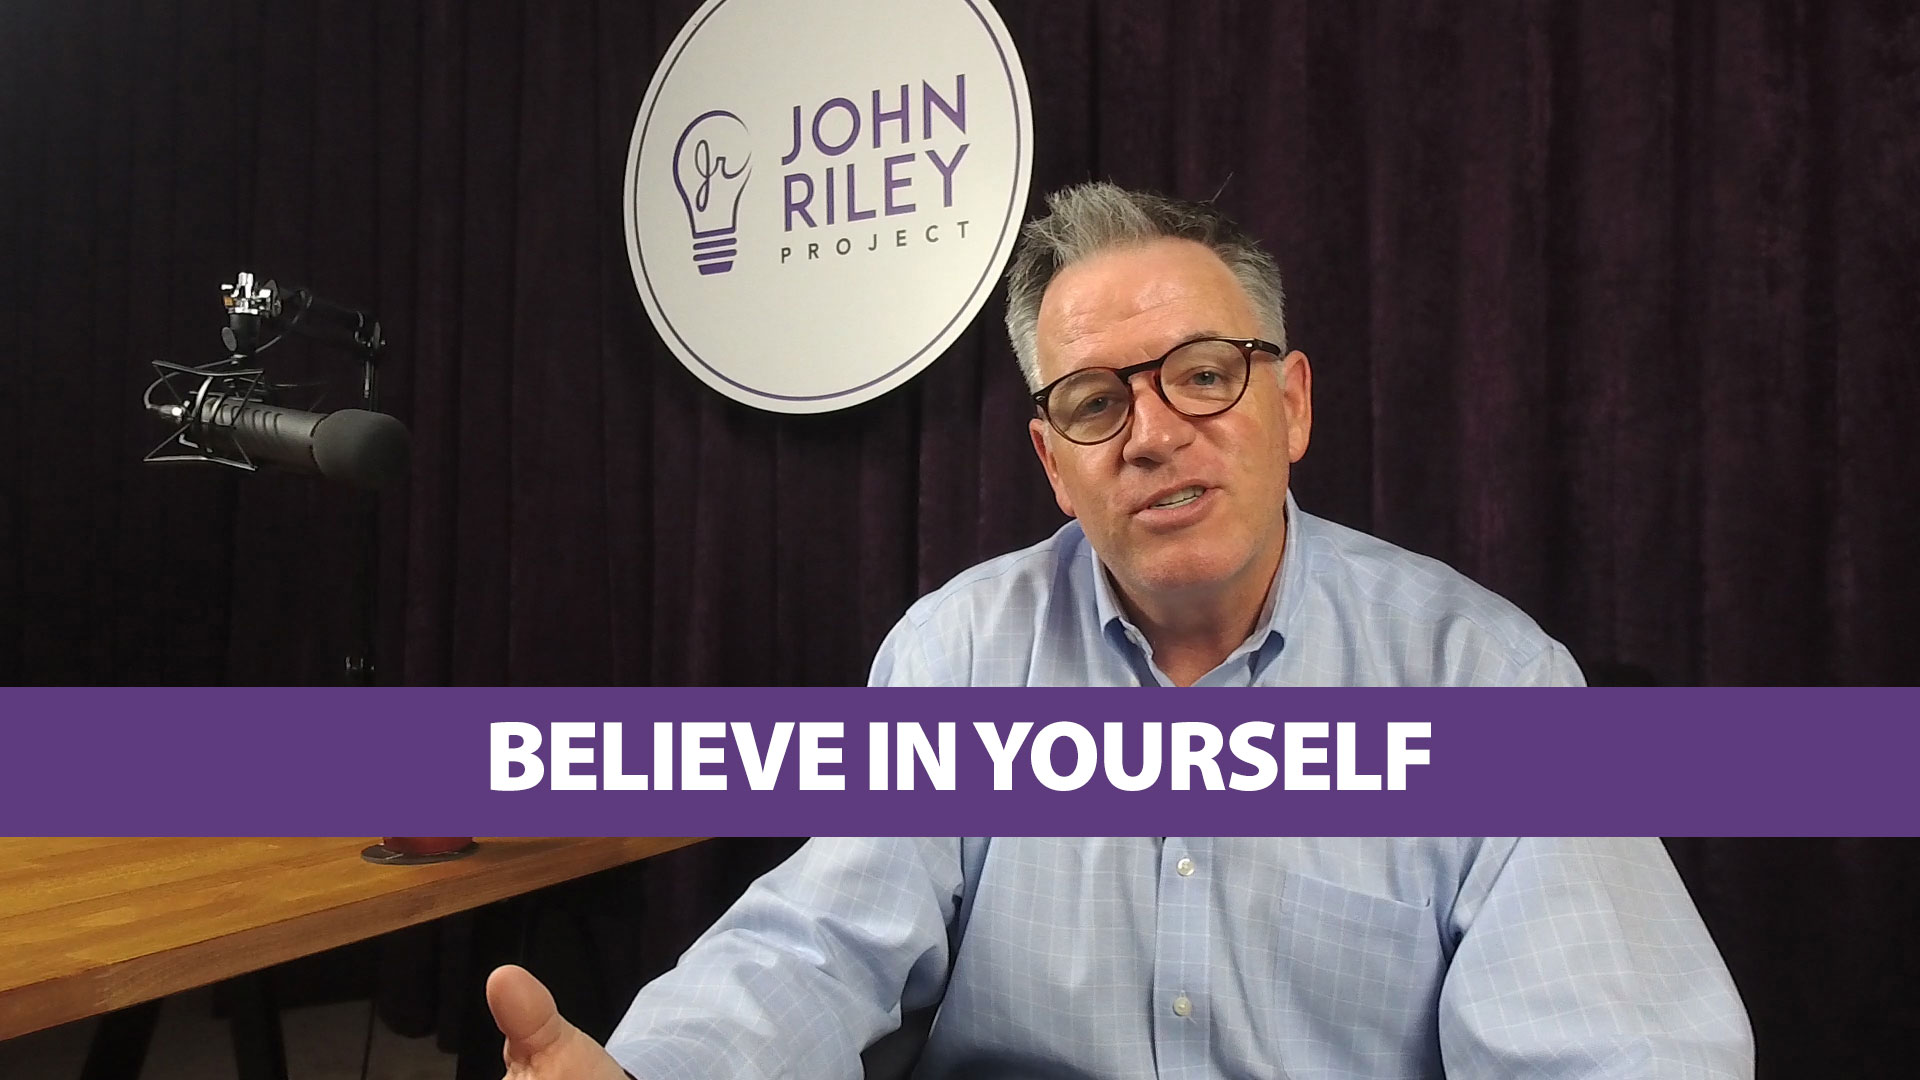 Believe in Yourself, John Riley Project